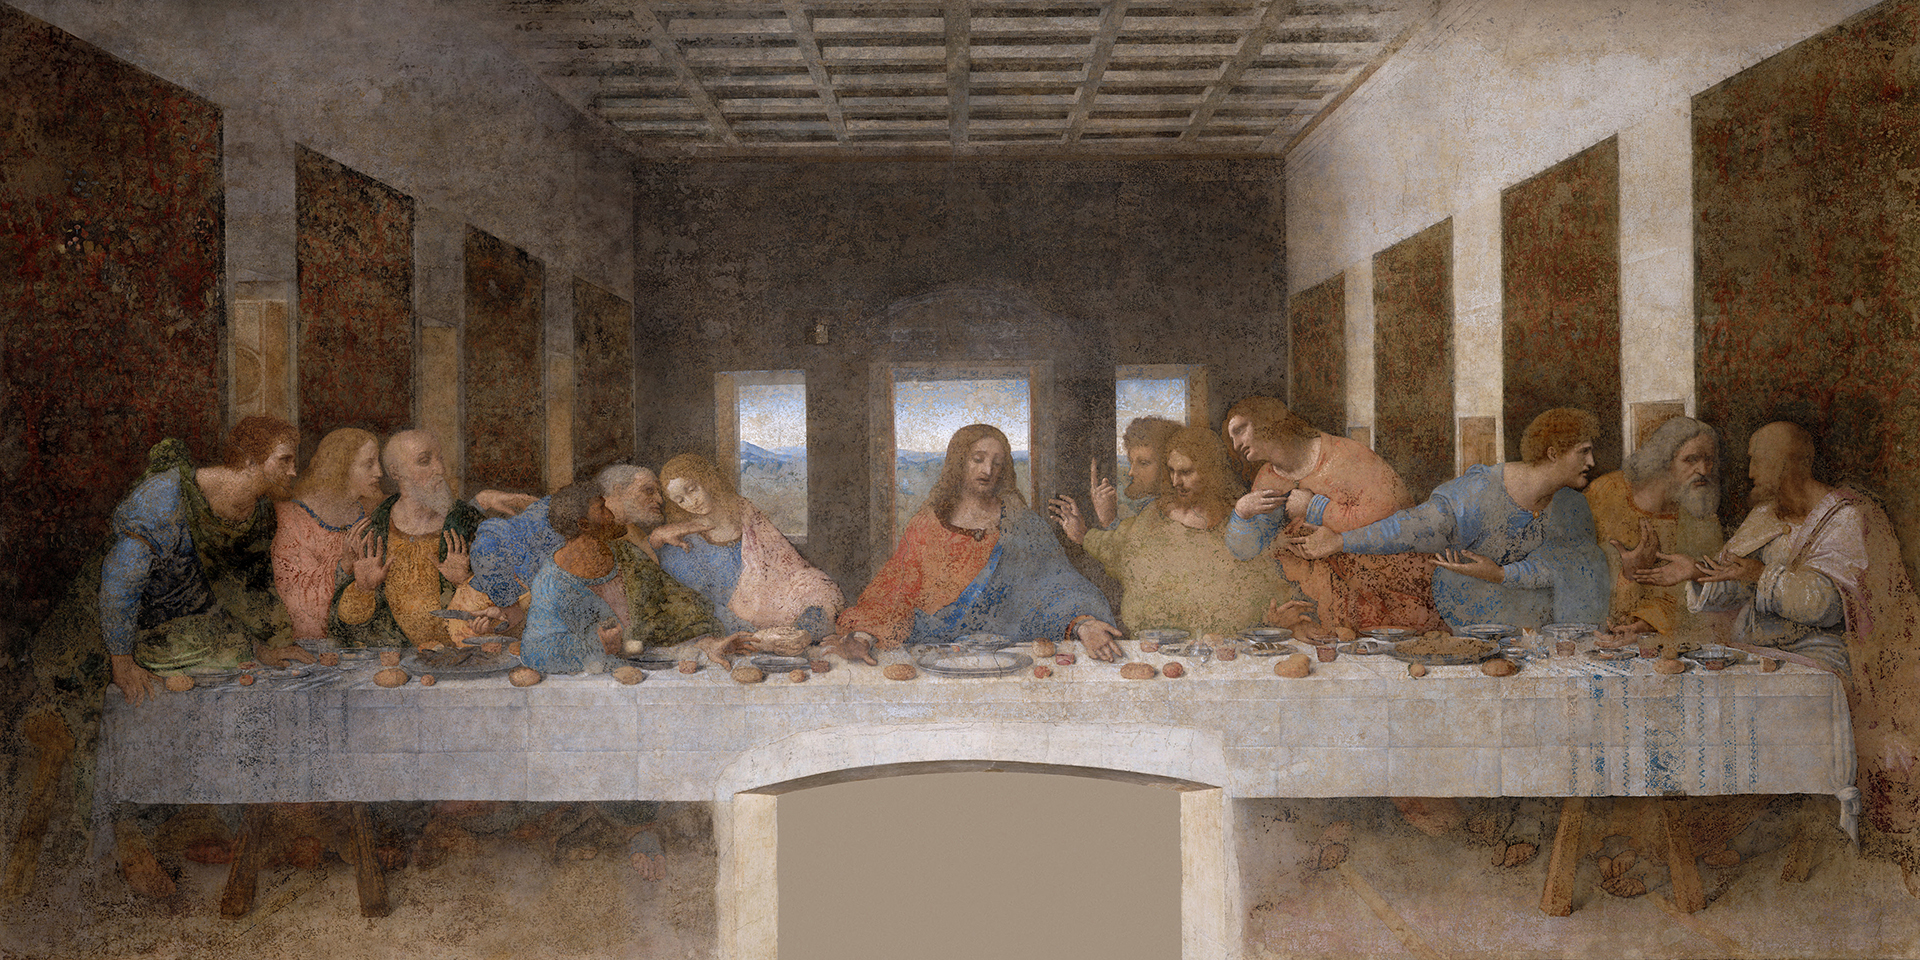 El mural de la última cena, obra de Leonardo Da Vinci que se encuentra en Milán. Tuvo lugar luego de la llegada de Jesús a Jerusalén.